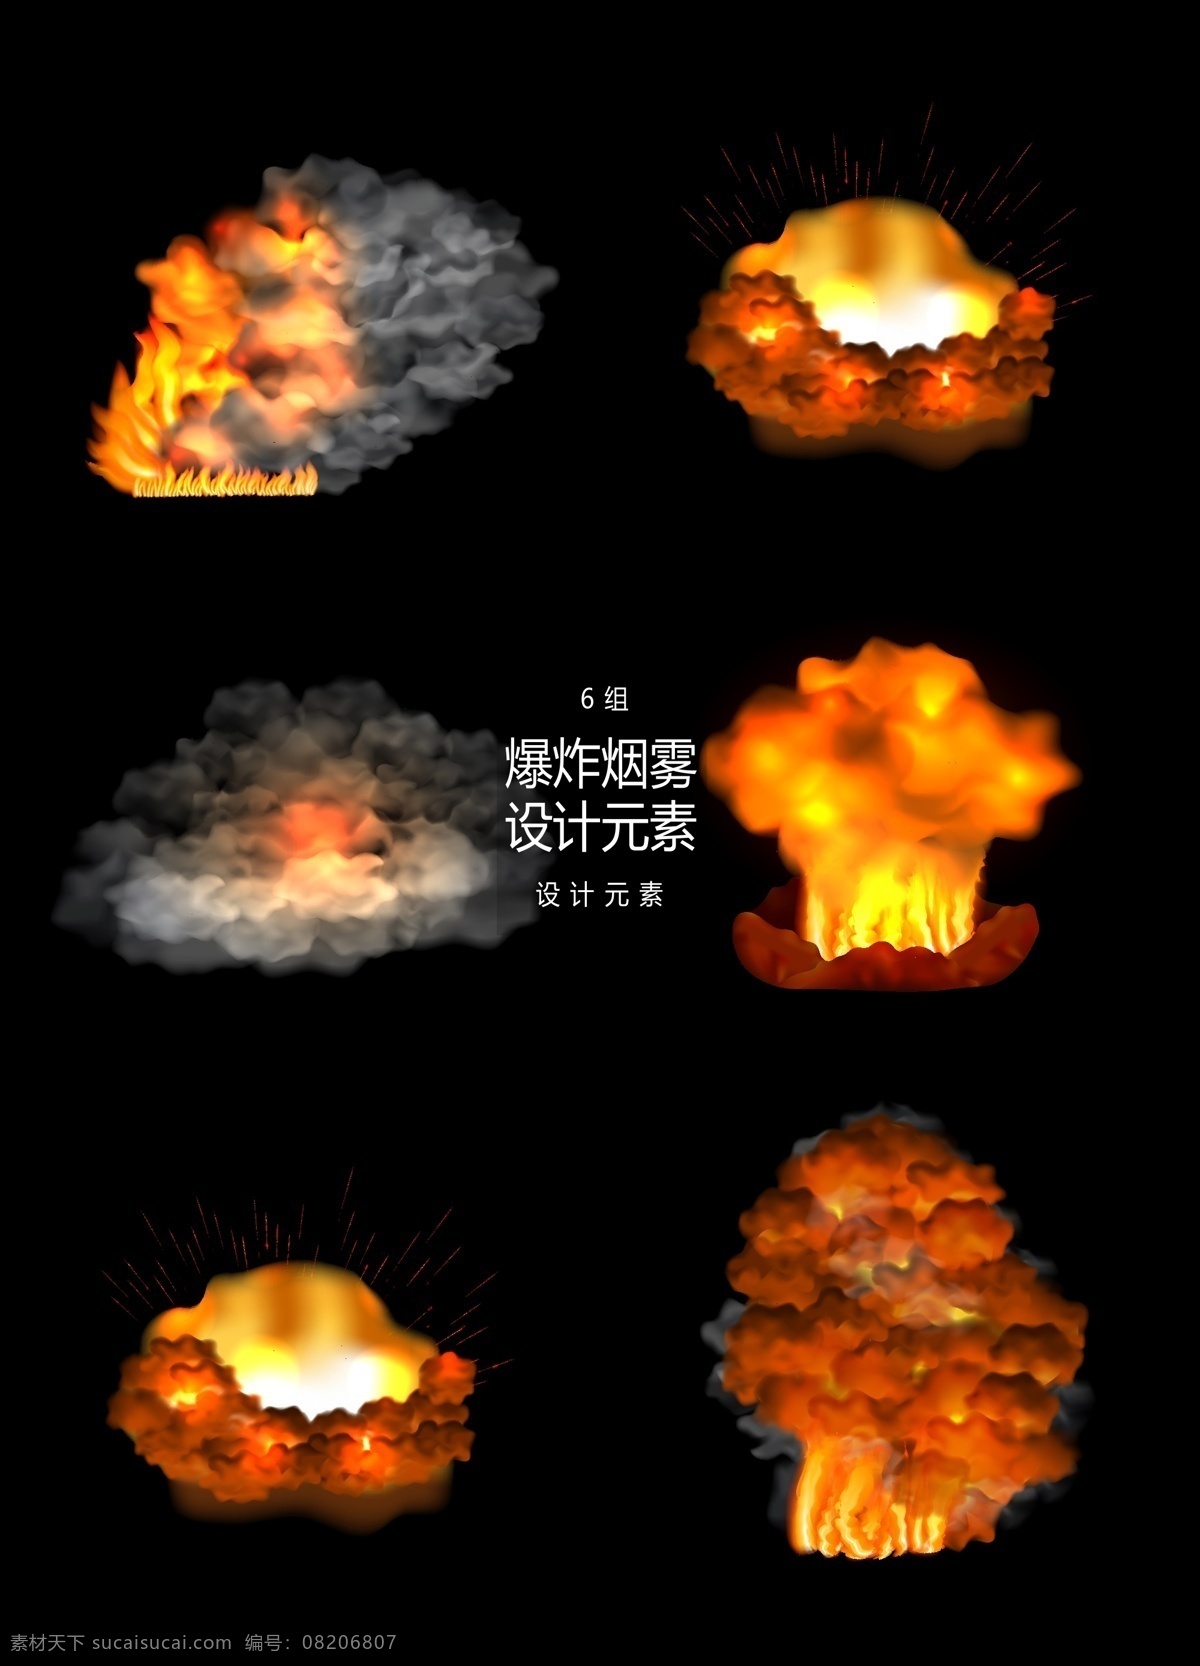 炸弹 烟雾 元素 设计元素 火灾 火 火焰 炸弹烟雾 ai素材 蘑菇云 炸裂